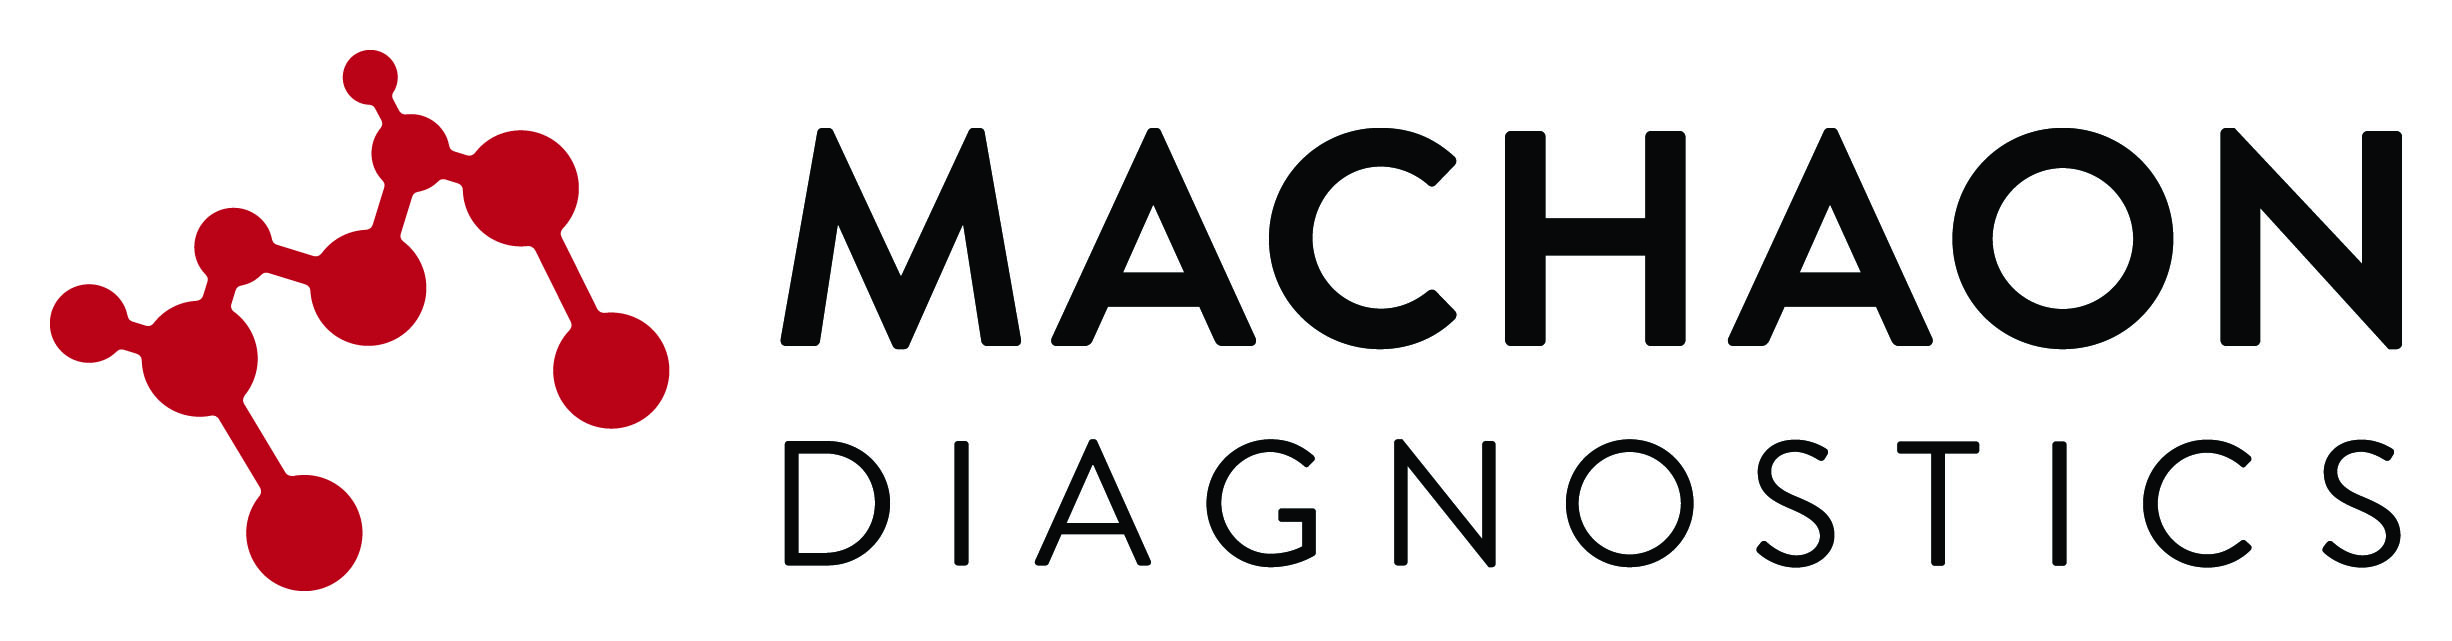 Machaon Diagnostics, Inc. 